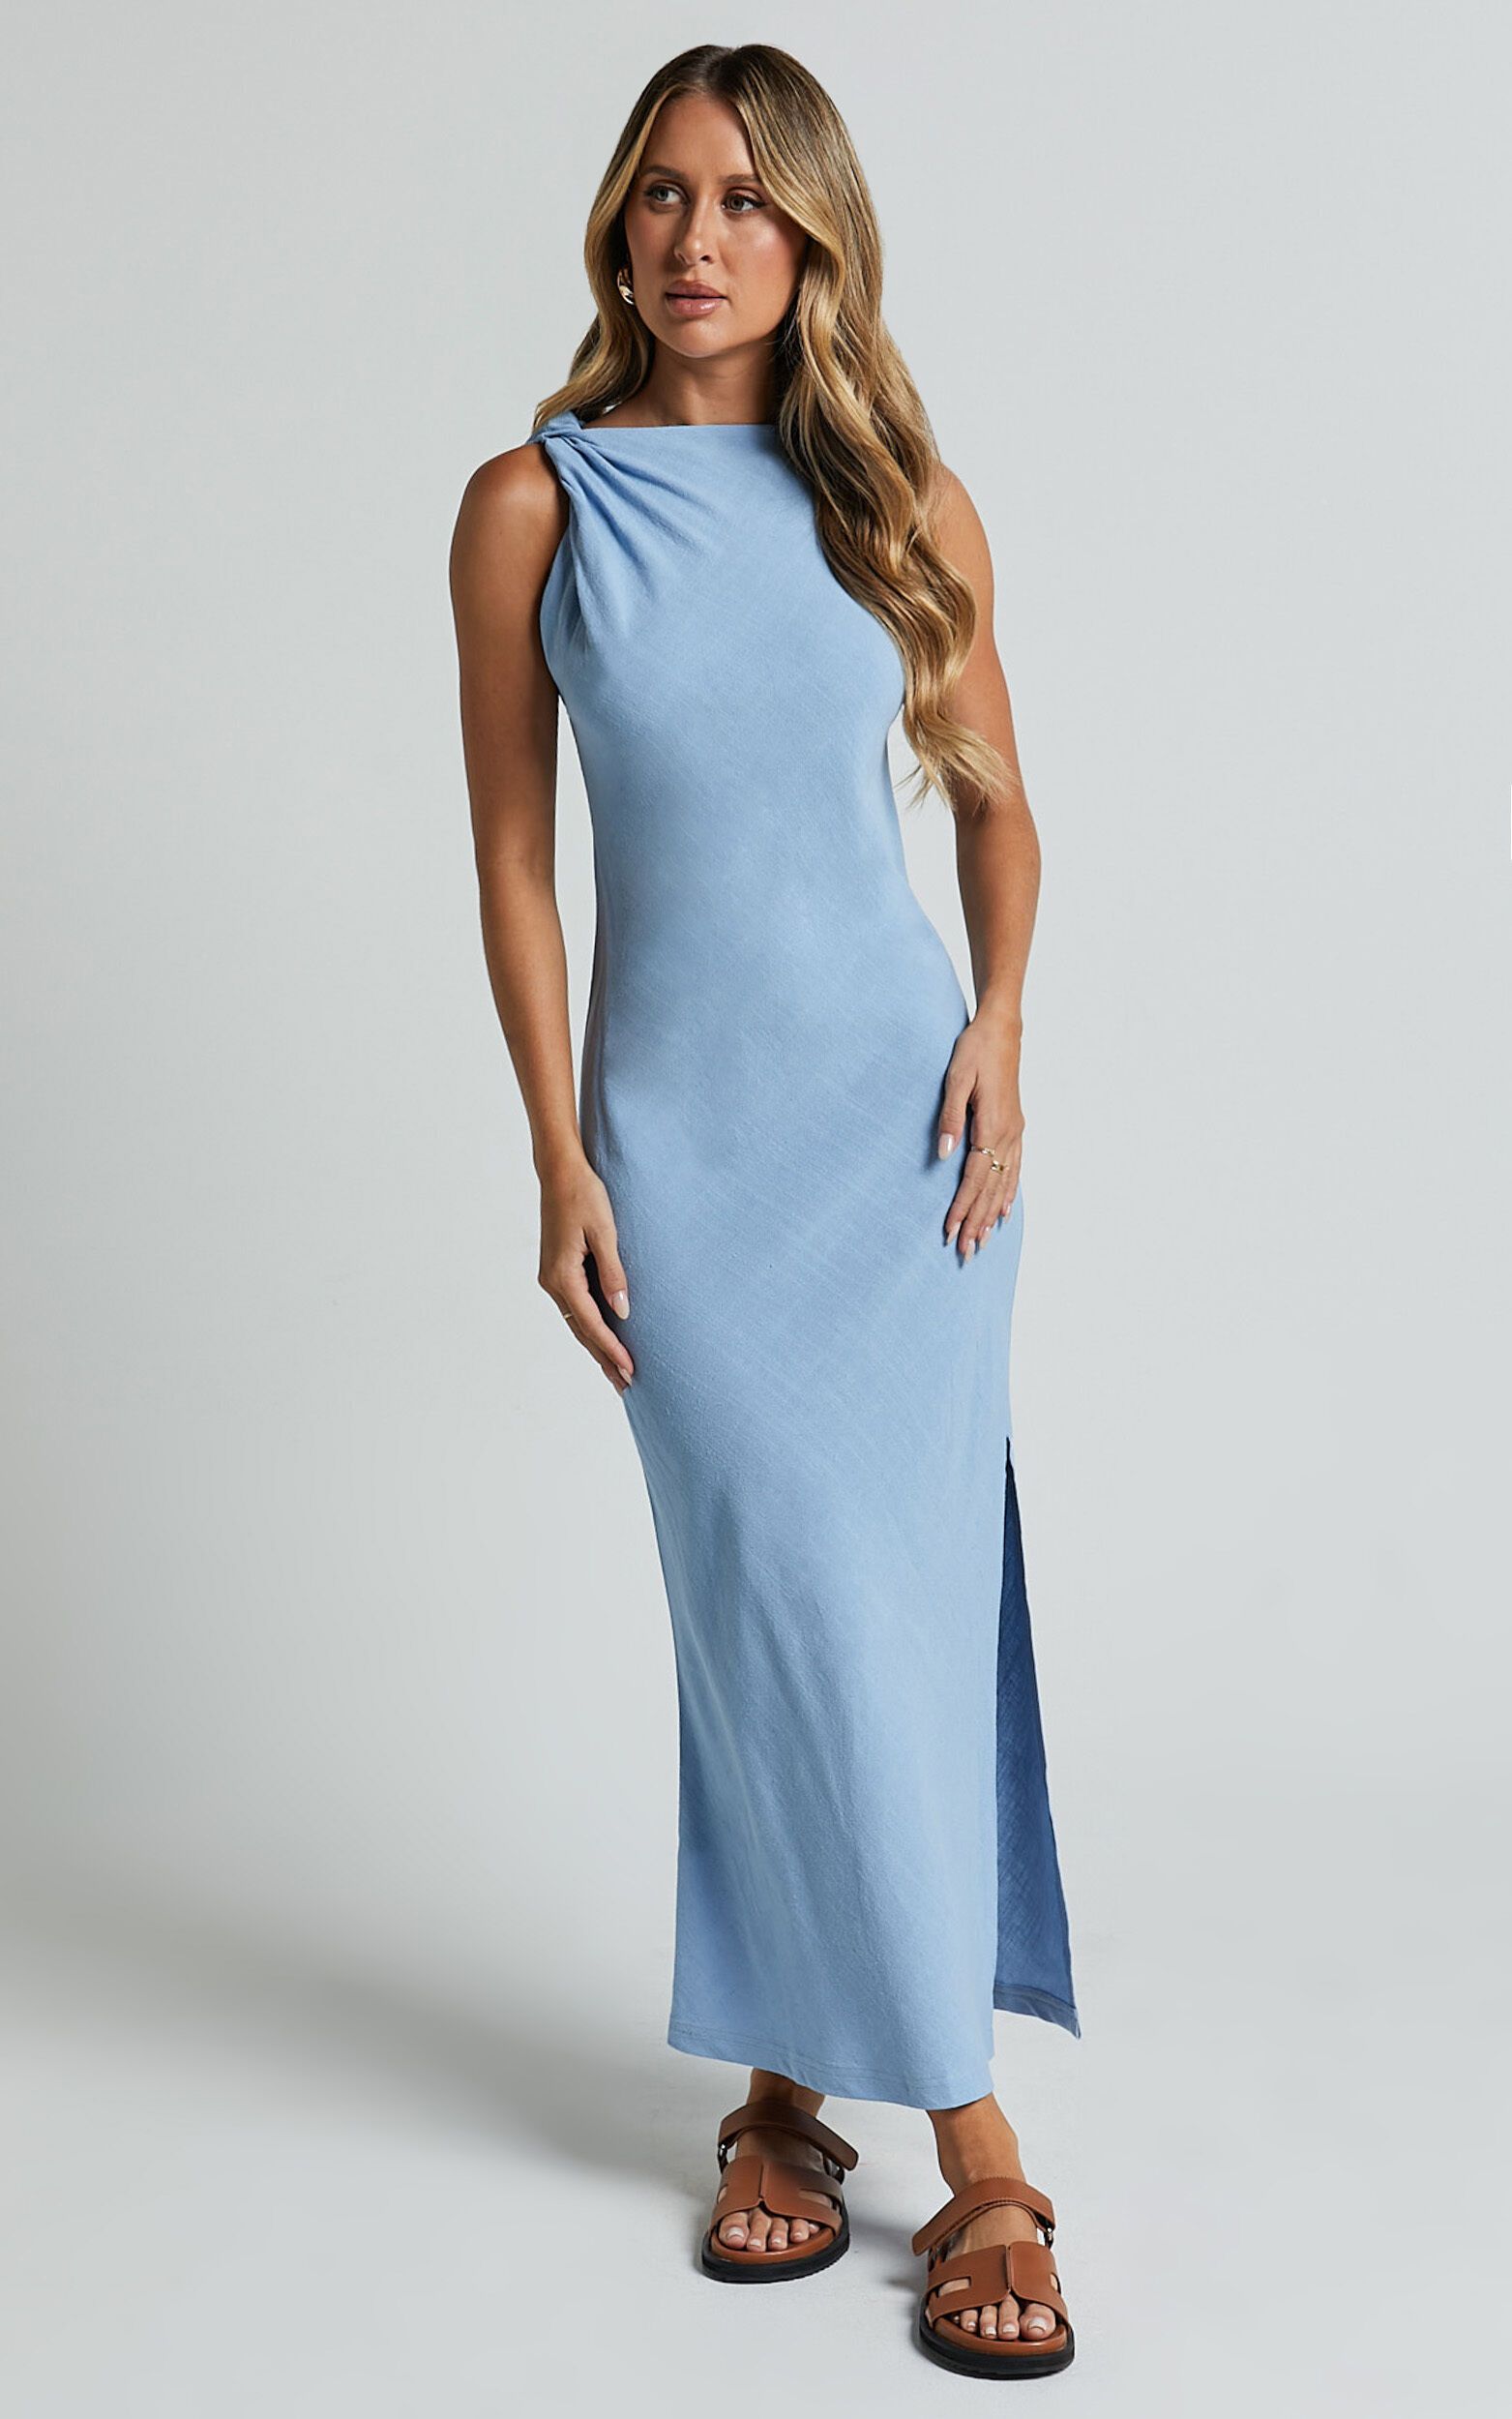 Jessenia Maxi Dress - Linen Look High Neck Dress in Blue | Showpo (ANZ)